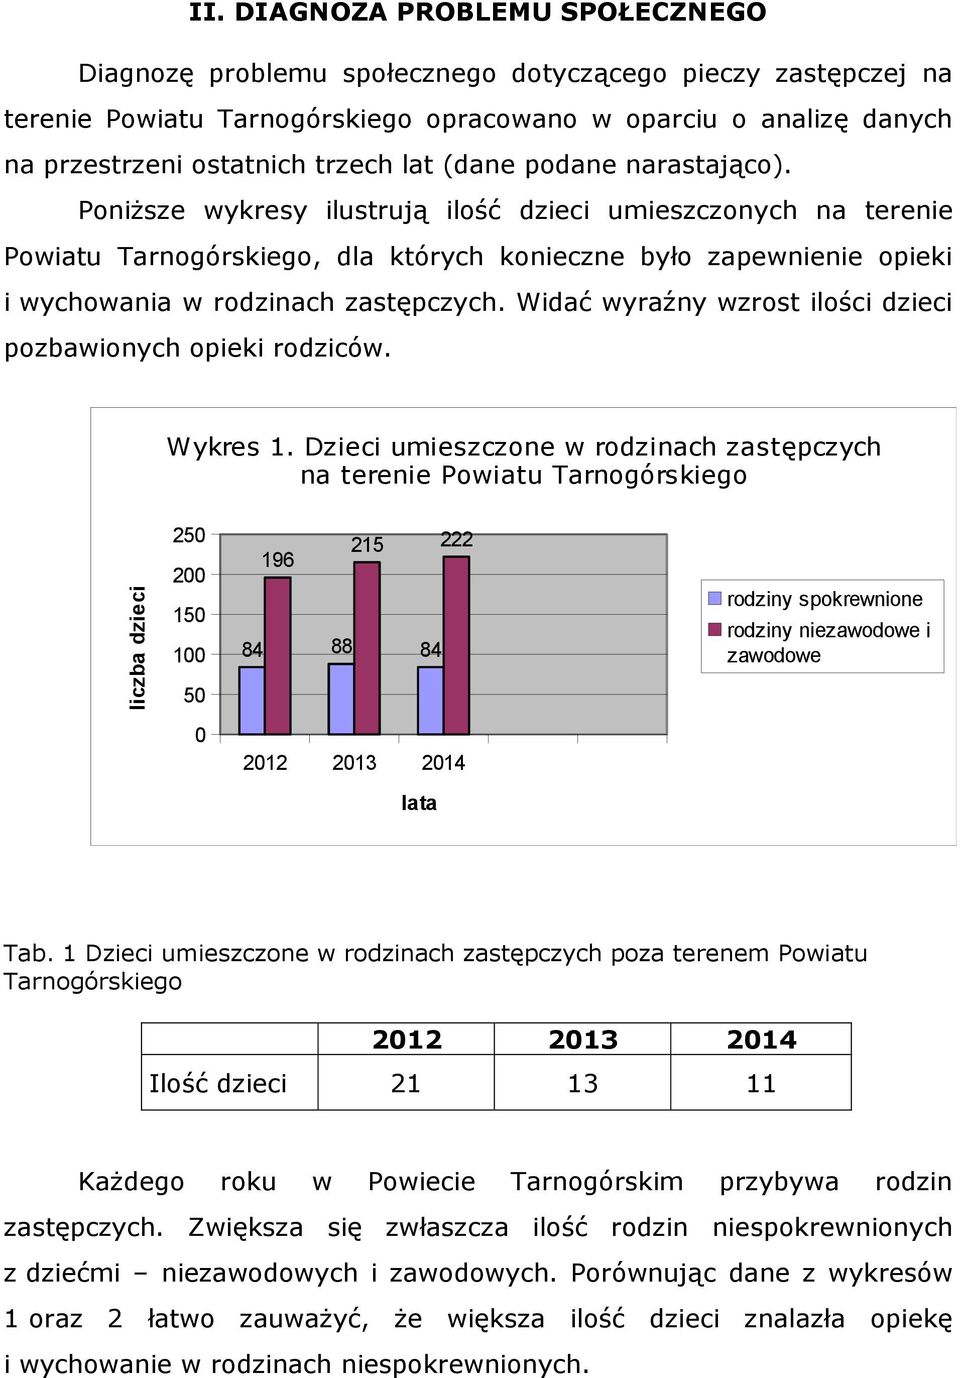 Poniższe wykresy ilustrują ilość dzieci umieszczonych na terenie Powiatu Tarnogórskiego, dla których konieczne było zapewnienie opieki i wychowania w rodzinach zastępczych.